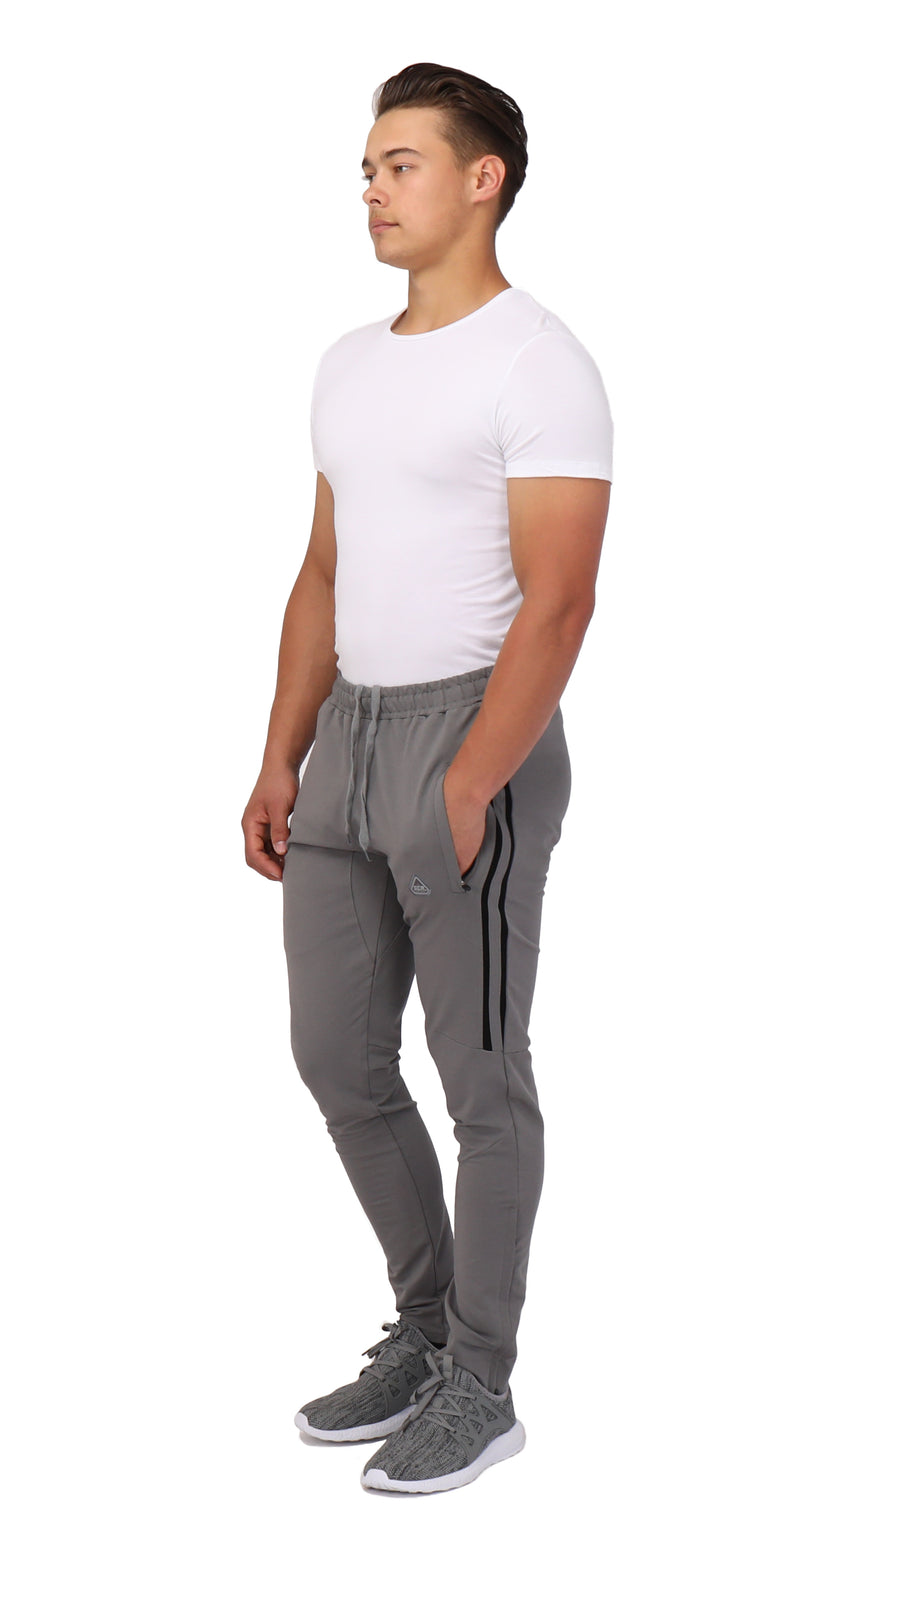 SCR Sportswear Men's sweatpants-Straight [434,SLIM Tall, 6'2-6'11] Large(33-35Waist) / 34 / Light Grey Heather | SCR Sportswear